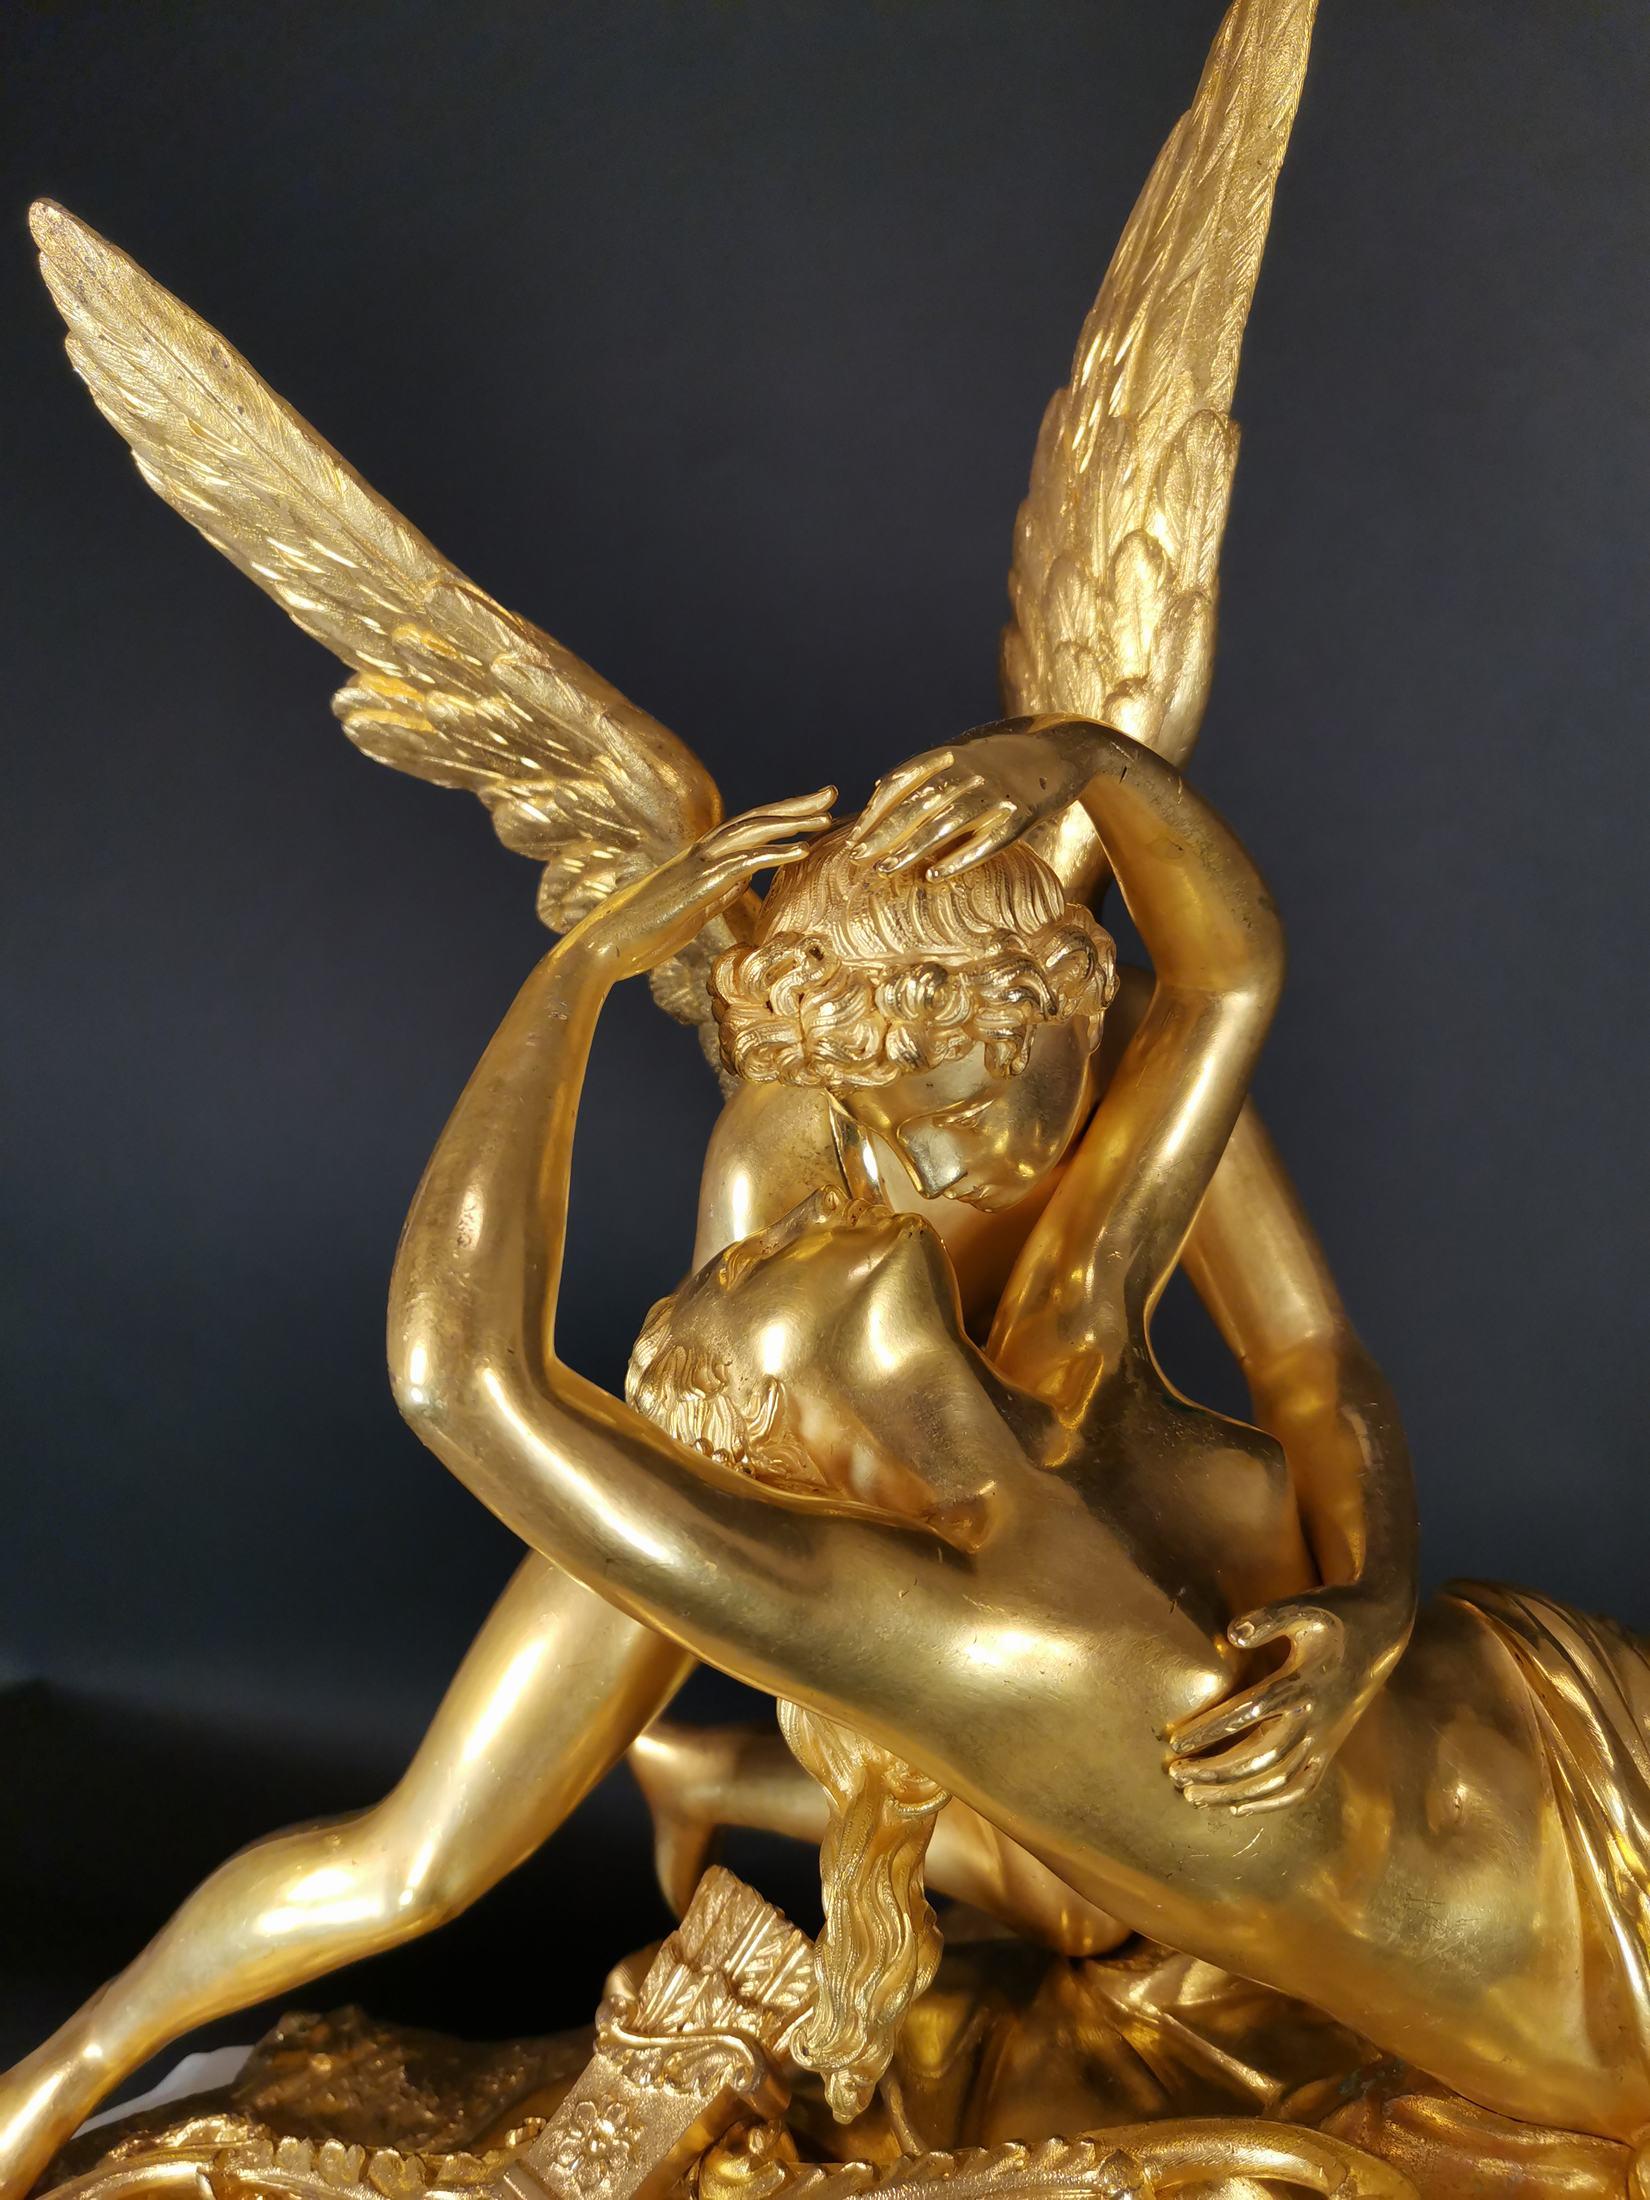 Importante pendule en bronze doré et onyx du XIXe siècle.
Le cadran en émail. 
Fabriqué pour le marché russe.
Grandes dimensions : 60 x 55 x 18 cm...
Avec pendule et clé 6550 euros.